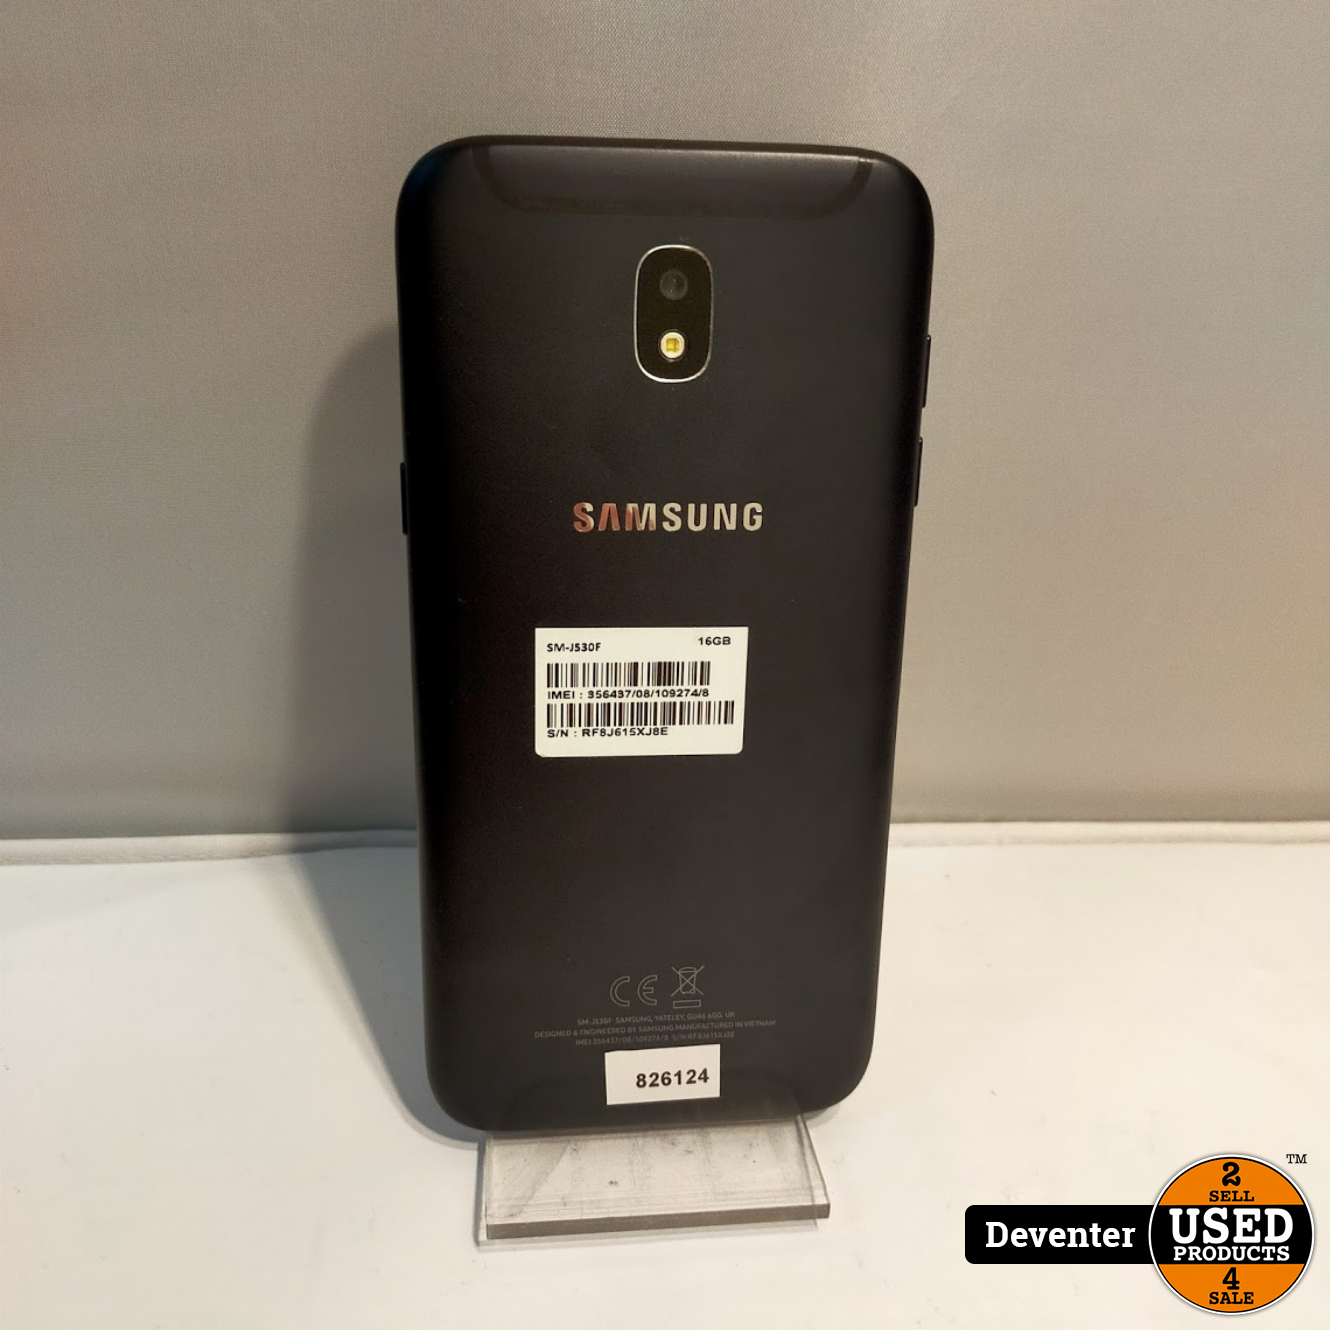 Bruin Controversieel Onderling verbinden Samsung Galaxy J5 2017 16GB Zwart II Net met garantie - Used Products  Deventer